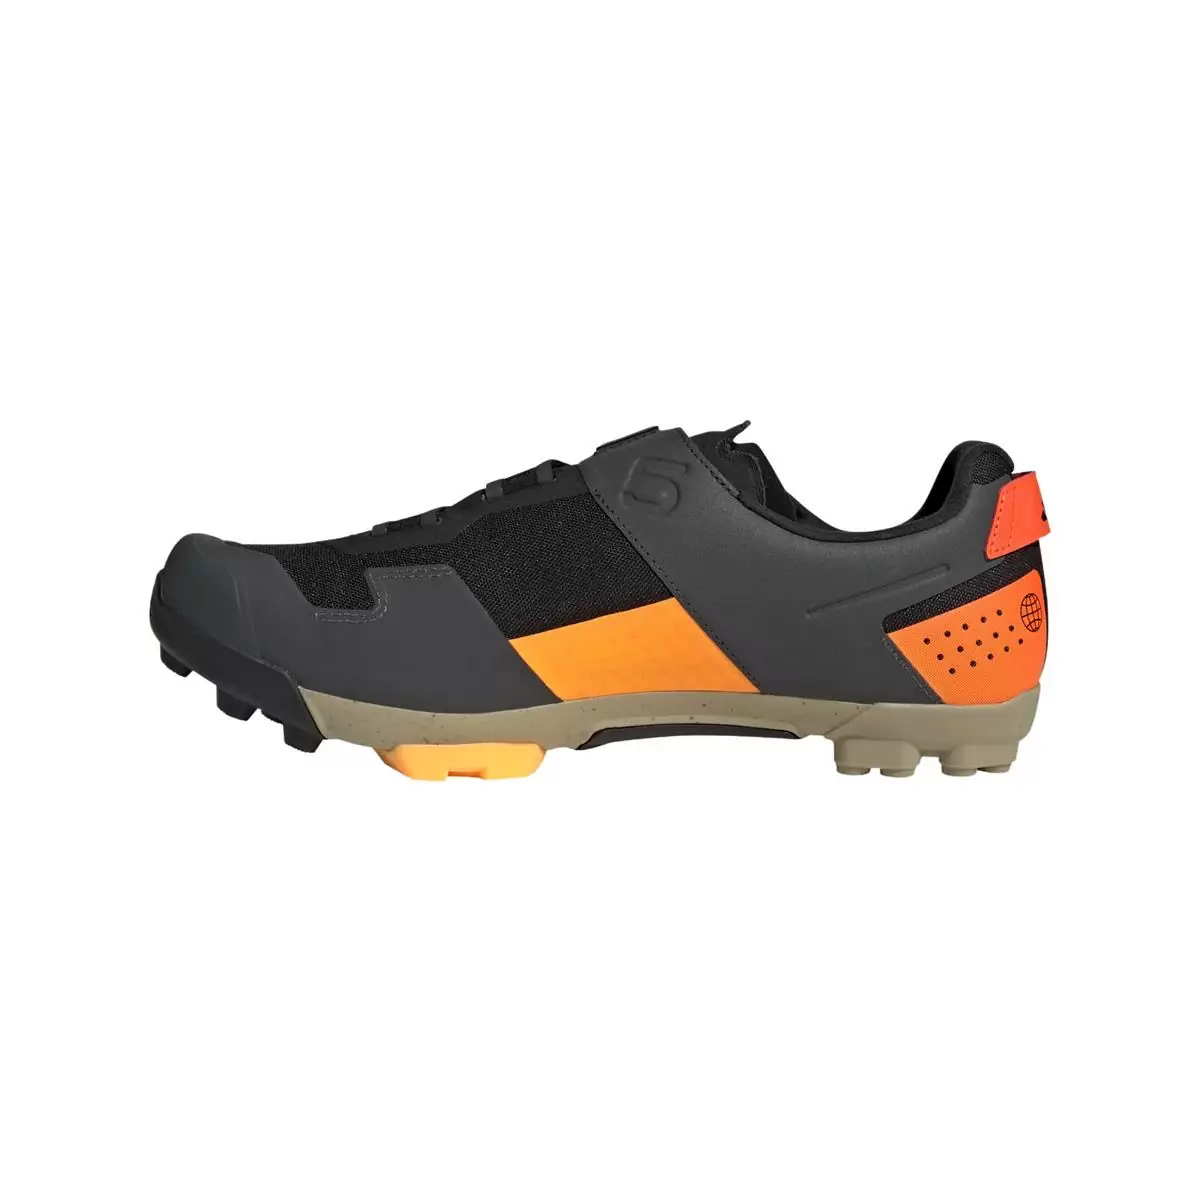 Clip 5.10 Kestrel Boa MTB Shoes Black/Orange Size 41 #2